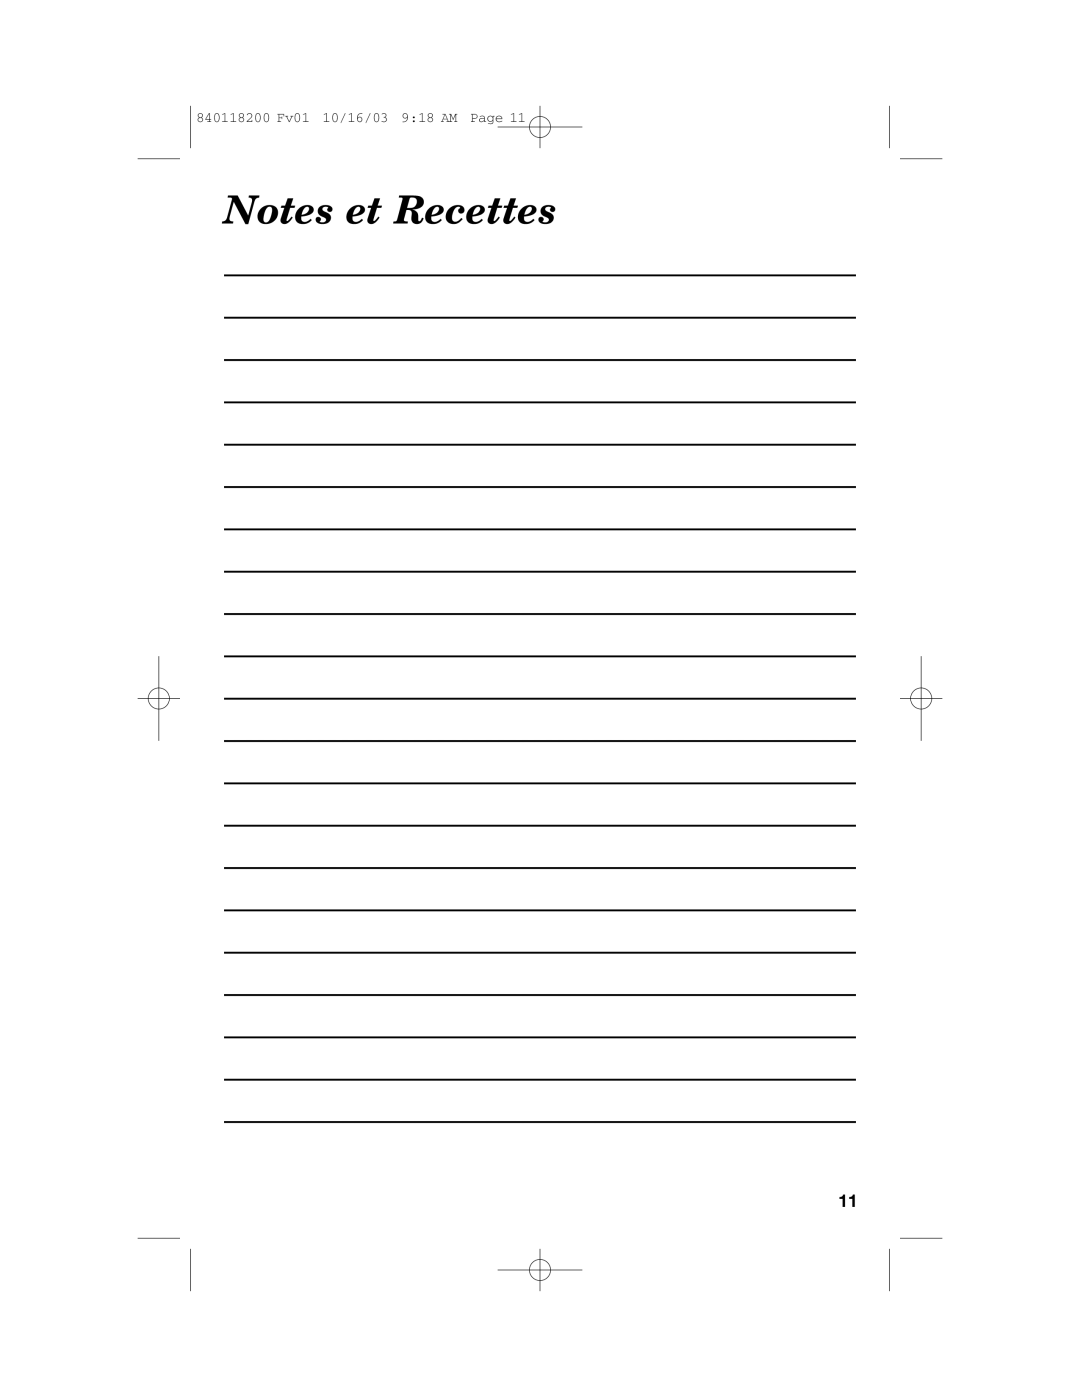 Hamilton Beach 67900 manual Notes et Recettes, 840118200 Fv01 10/16/03 9 18 AM Page 